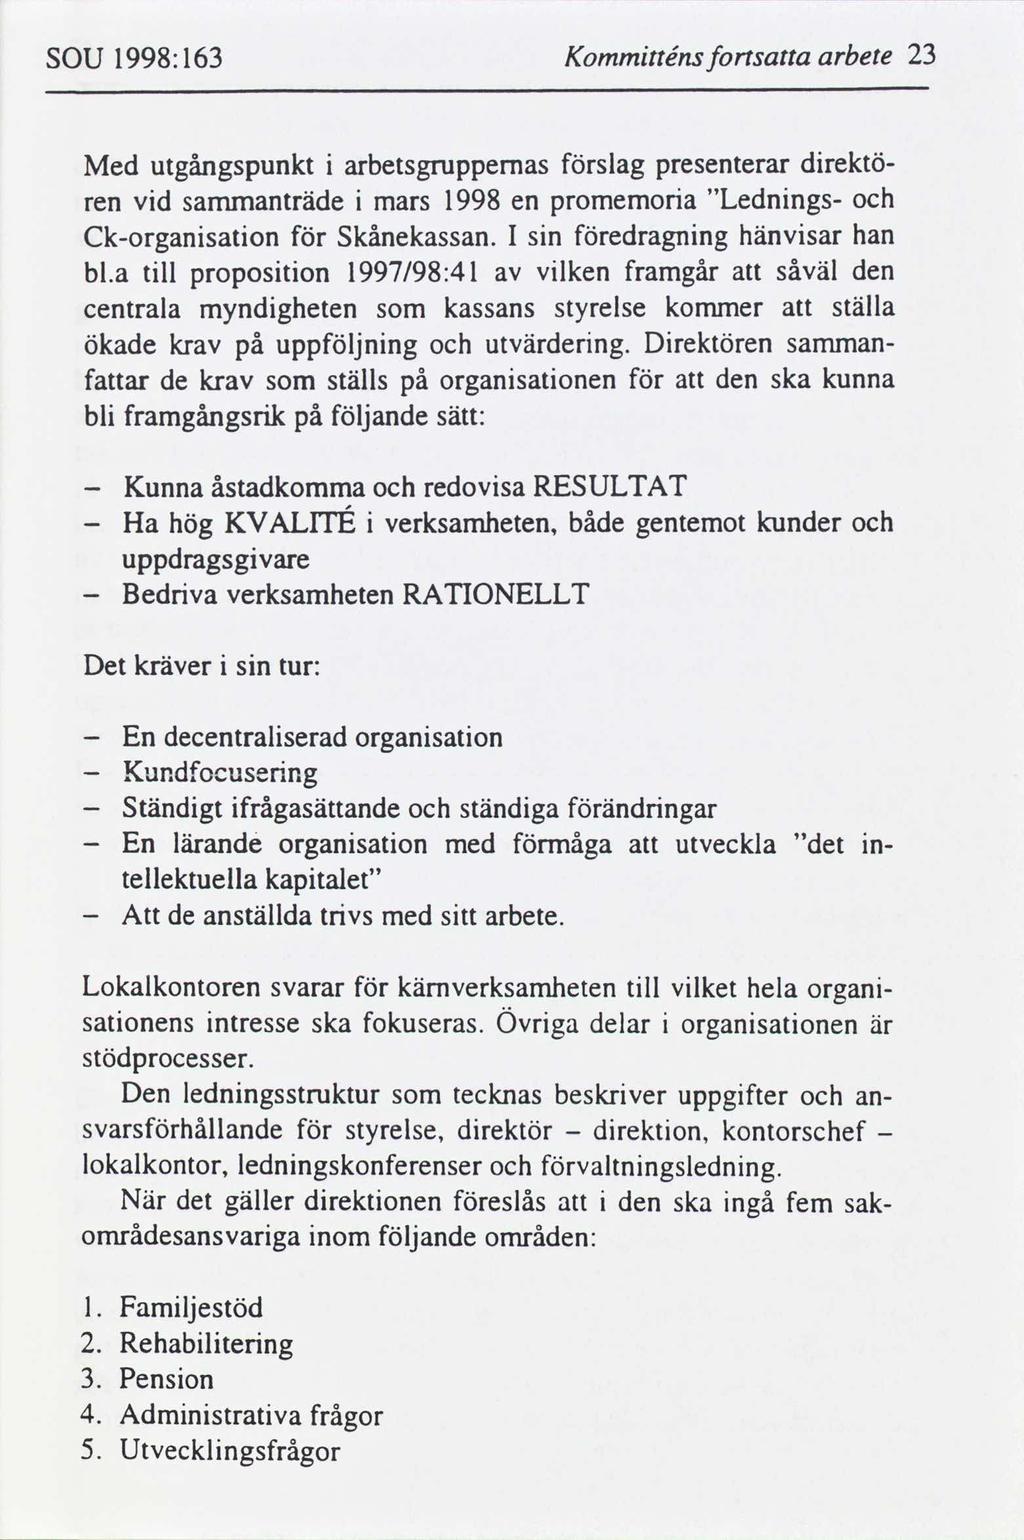 SOU 1998:163 Kommtténs fortsa arbete 23 Med utgångspunkt arbetsgruppemas slag presenterar drektö ren vd sammanträde mars 1998 en promemora "Lednngs Ckorgansaton Skånekassan.